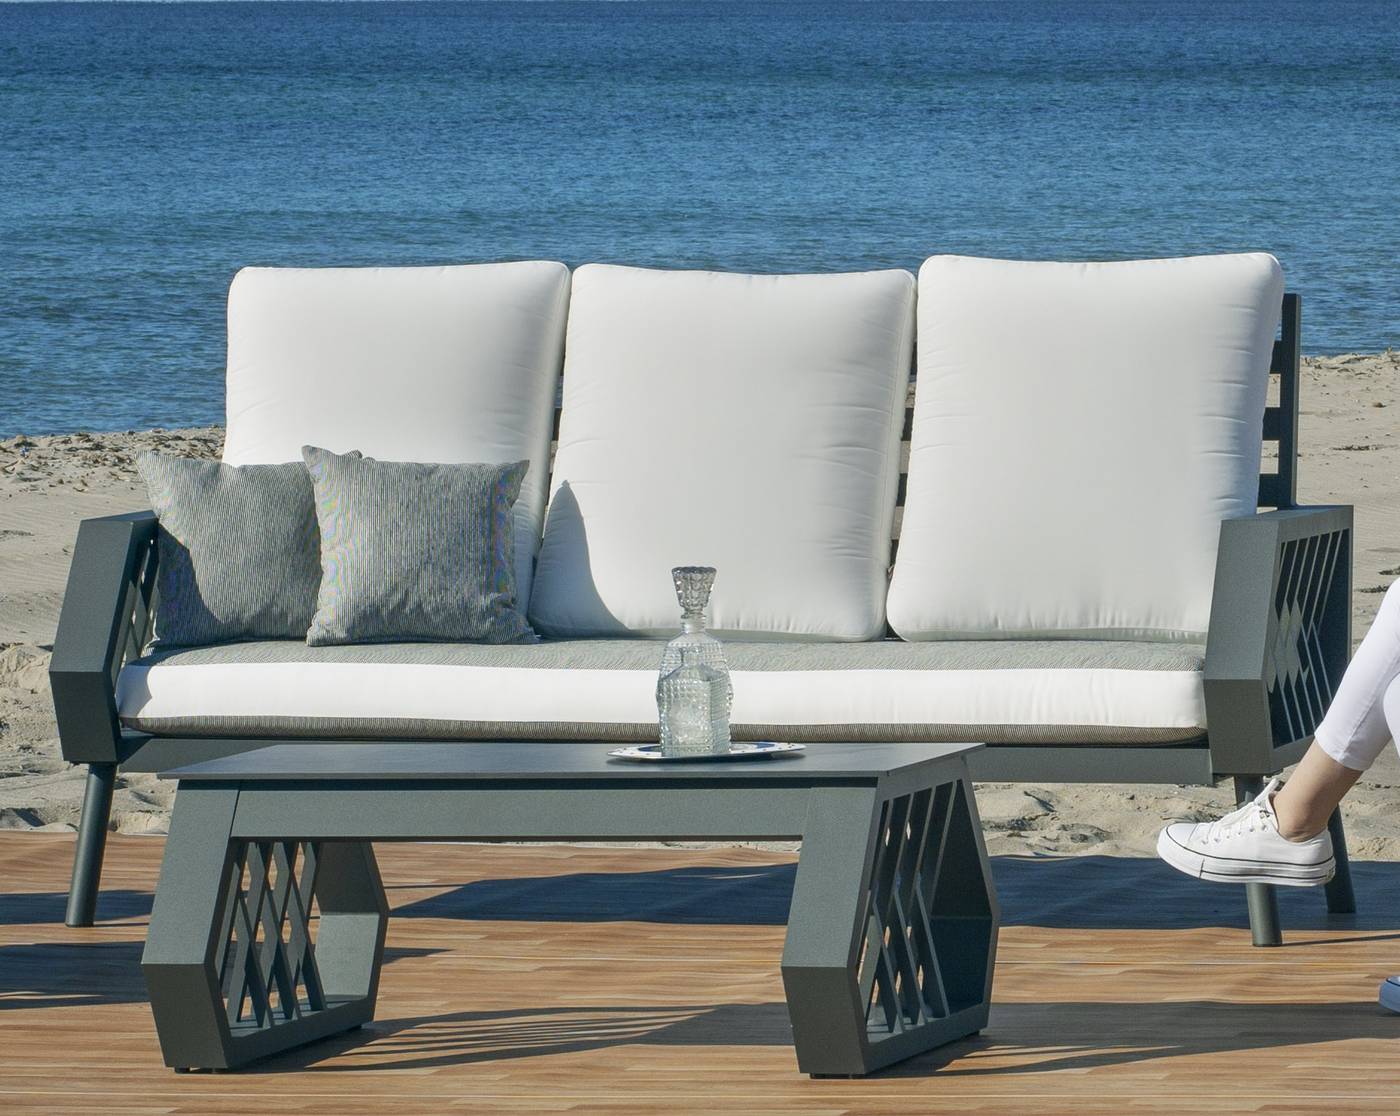 Set Aluminio Luxe Milano-8 - Conjunto robusto y lujoso de aluminio: 1 sofá de 3 plazas + 2 sillones + 1 mesa de centro + cojines.